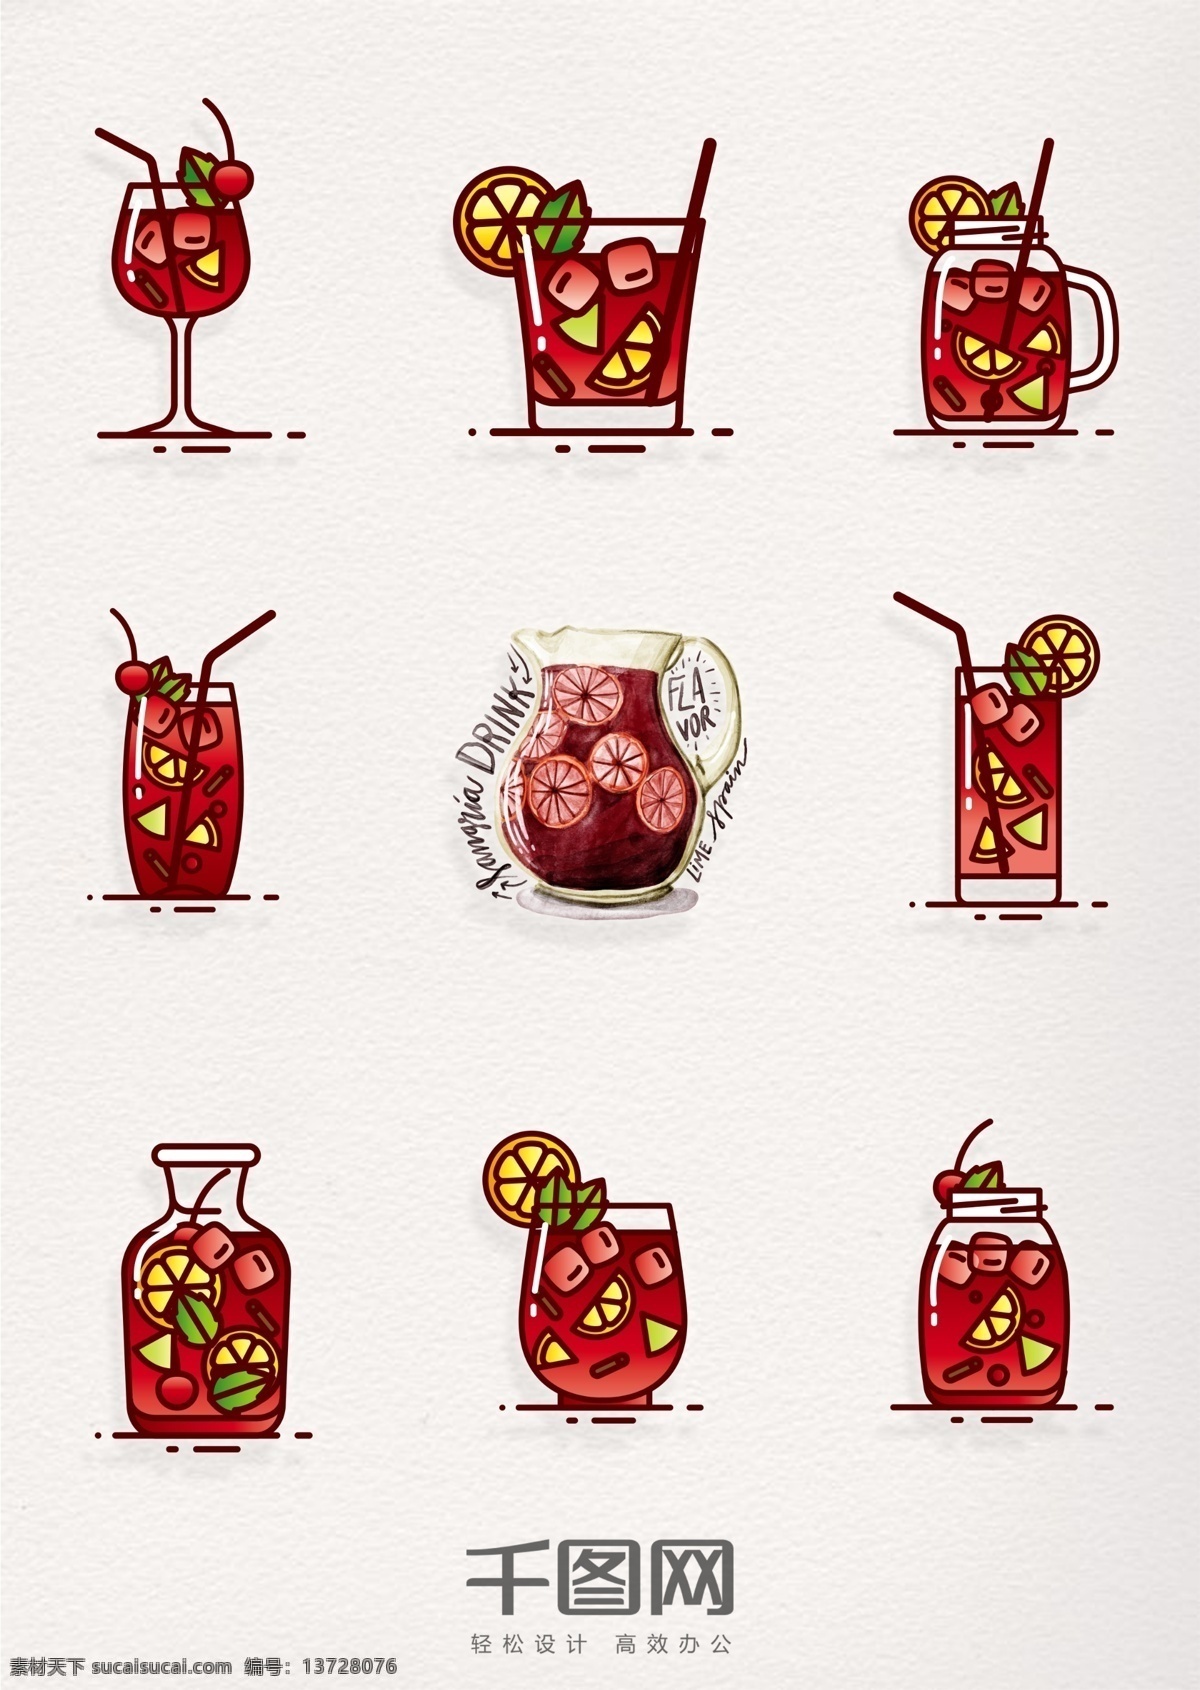 西班牙 桑 格利亚 汽酒 图标 红色 复古 西班牙国酒 果酒 气泡酒 桑格利亚汽酒 桑格利亚 酒 酒类元素 酒类图标